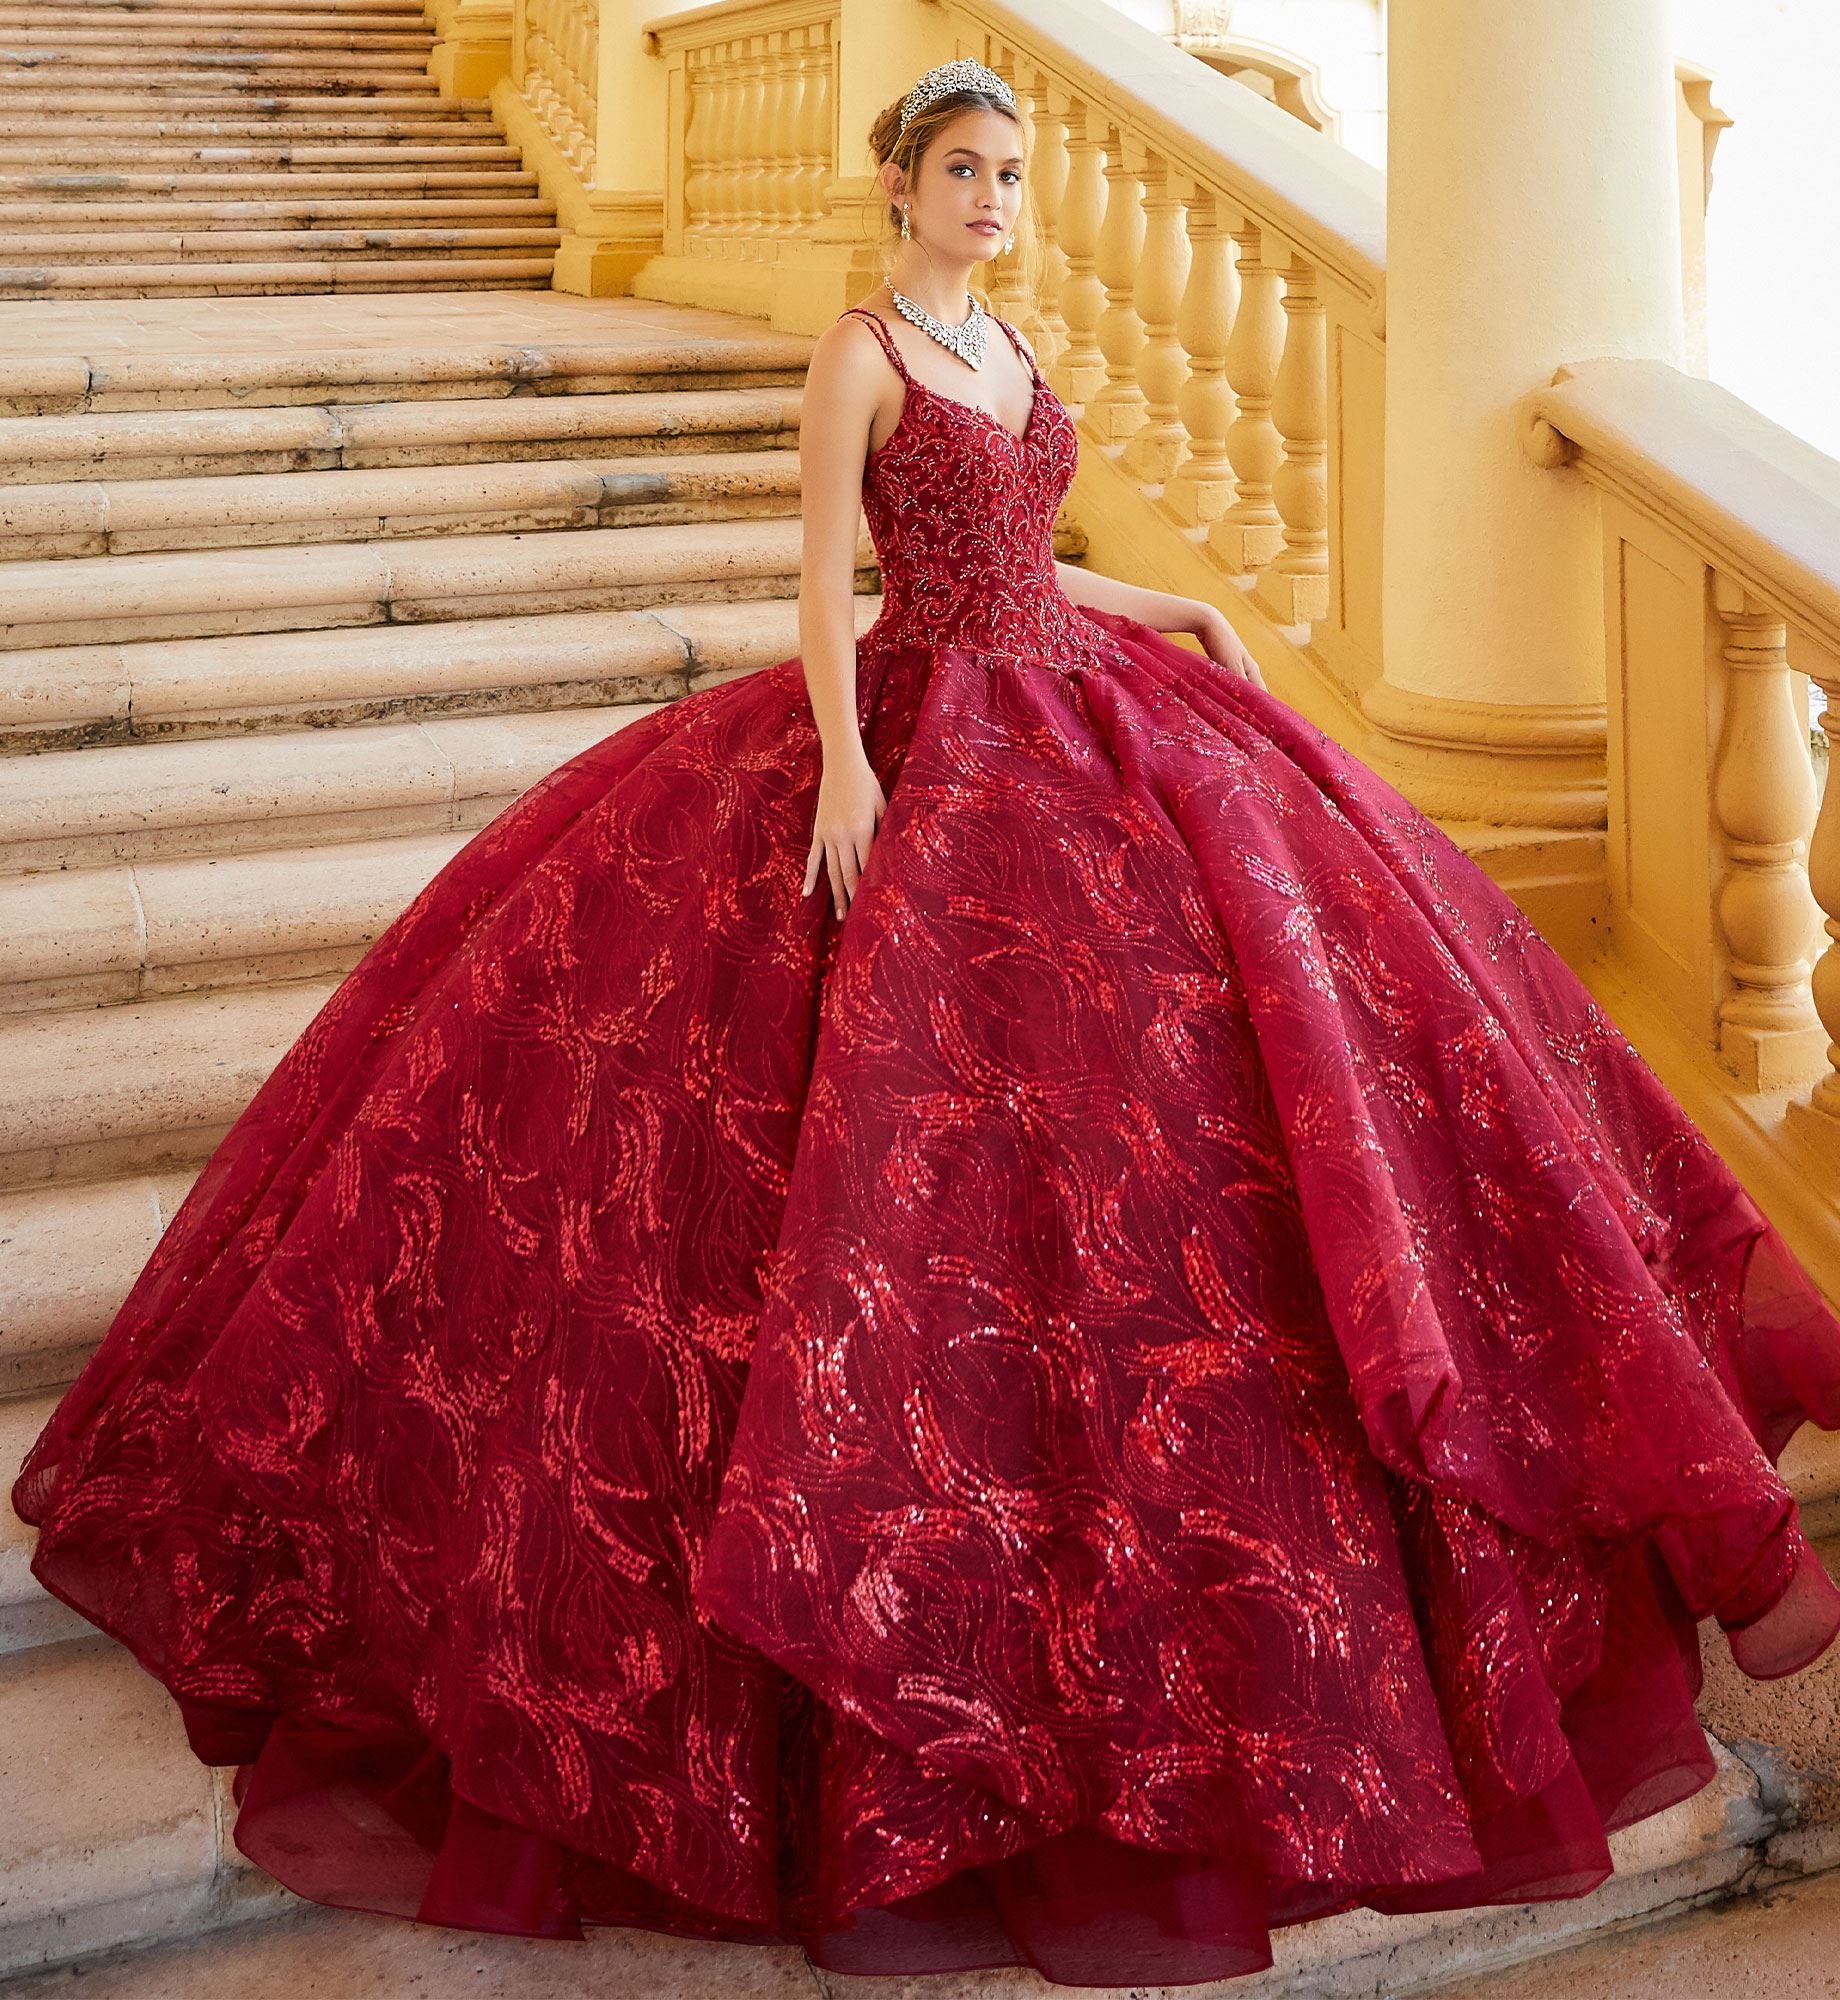 Brunette model in wine red quinceañera dress